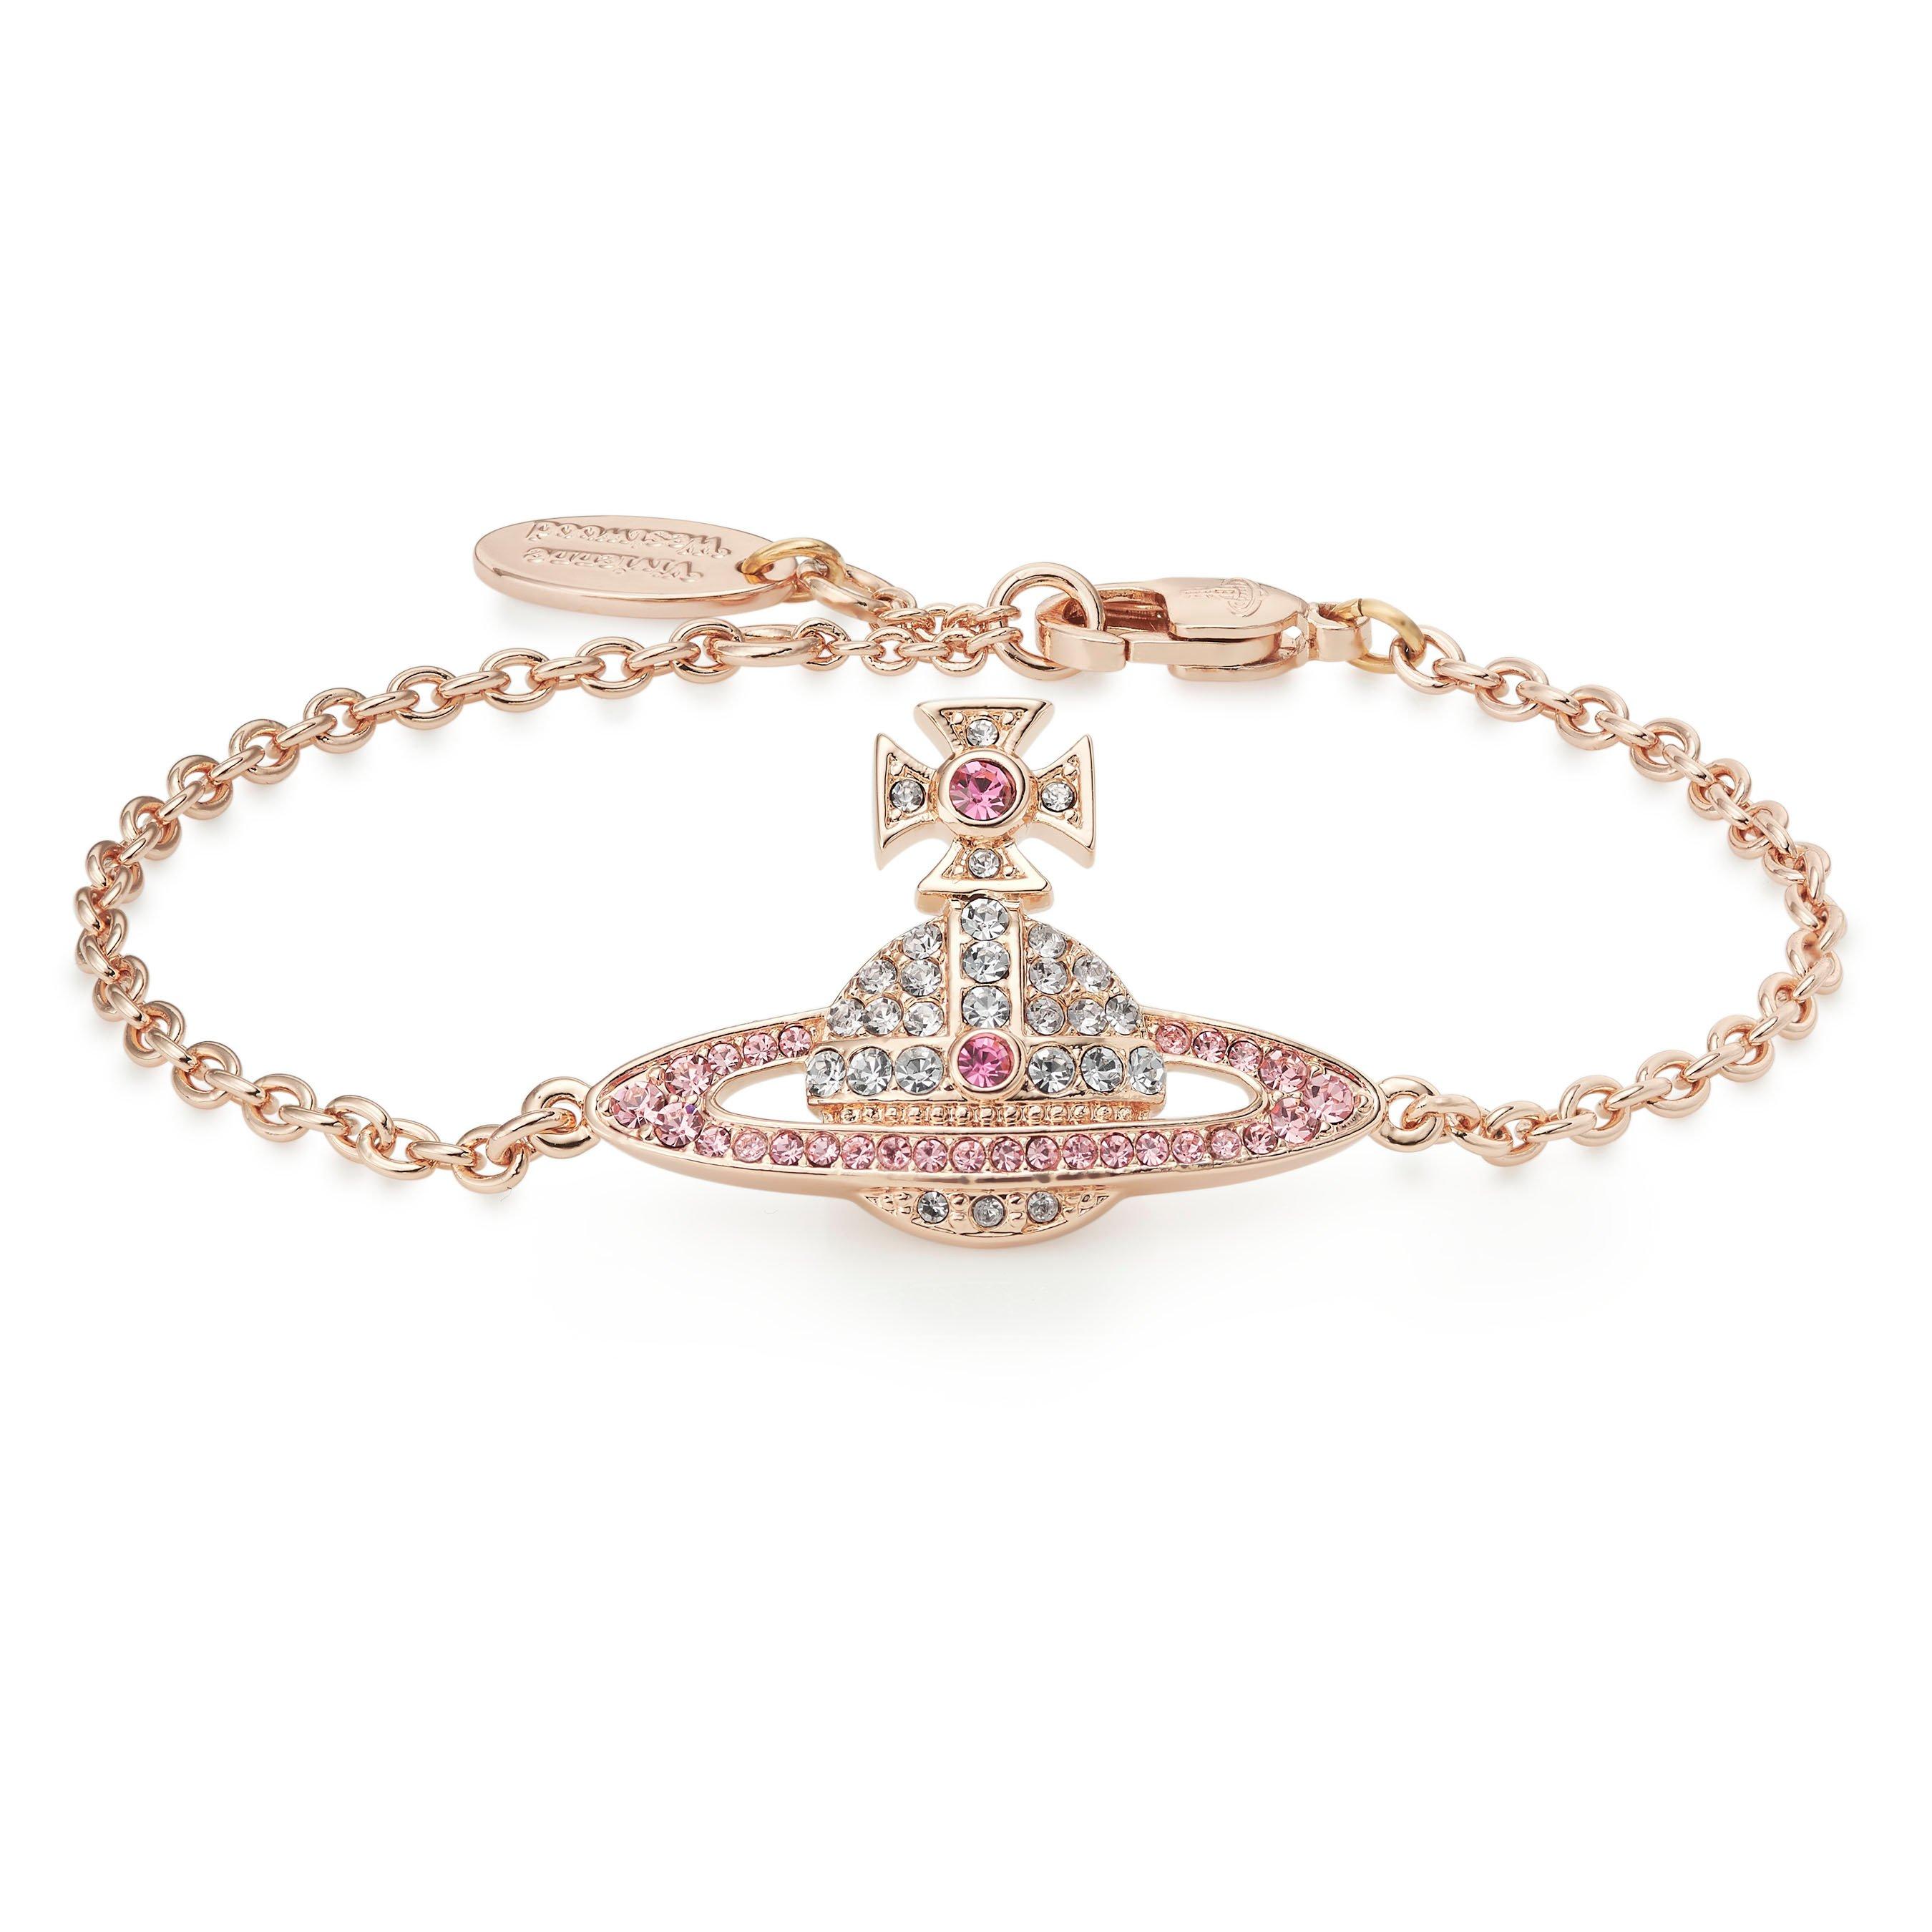 Vivienne Westwood Kika Pink Bracelet | 0130004 | Beaverbrooks the Jewellers